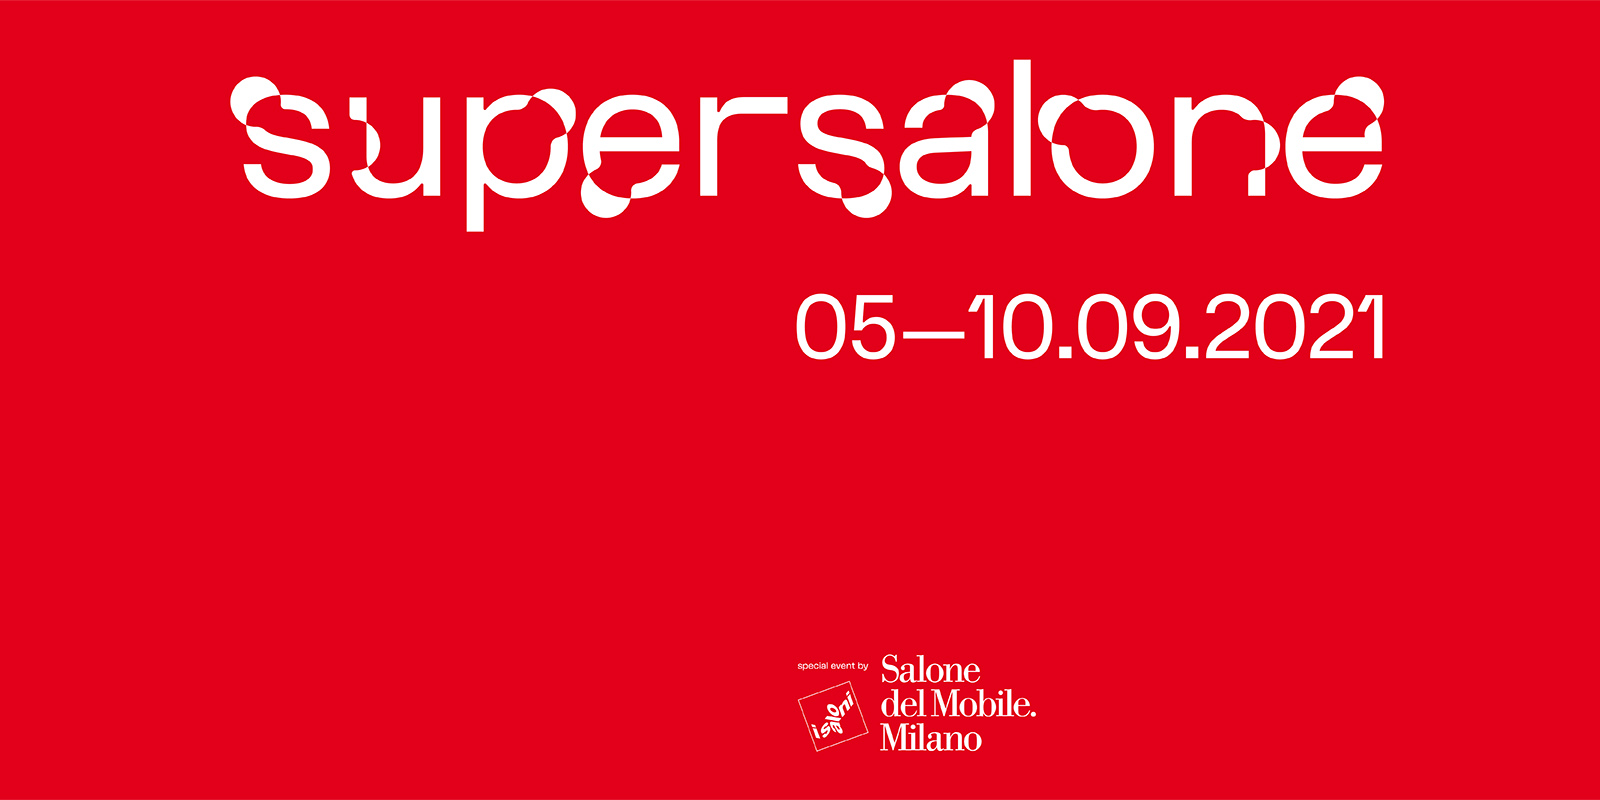 Si aprono le porte del “supersalone”, l’evento speciale 2021 del Salone del Mobile.Milano